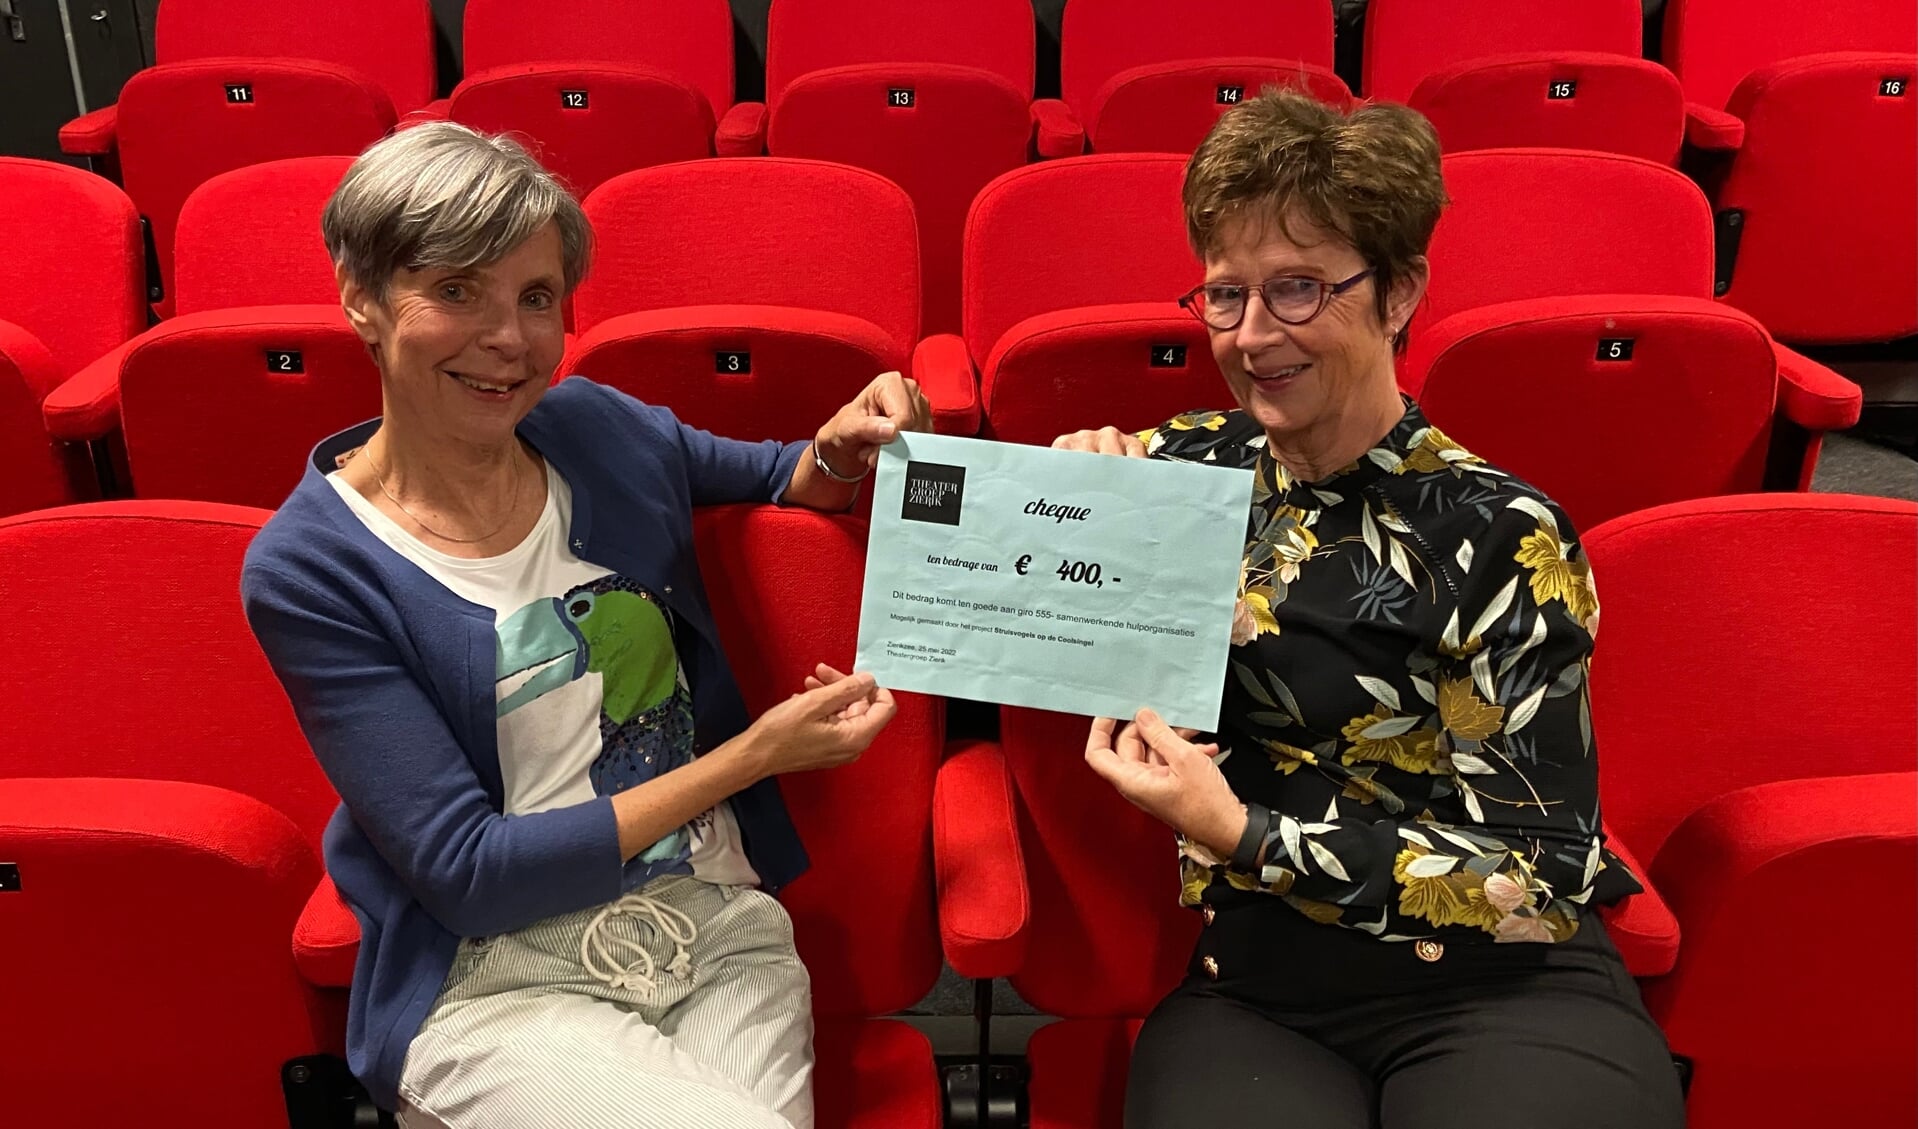 Regisseurs Yolanda Smits (l) en Nelleke Tamerus overhandigen namens Theatergroep Zierik een cheque voor Giro555 t.w.v 400 euro.